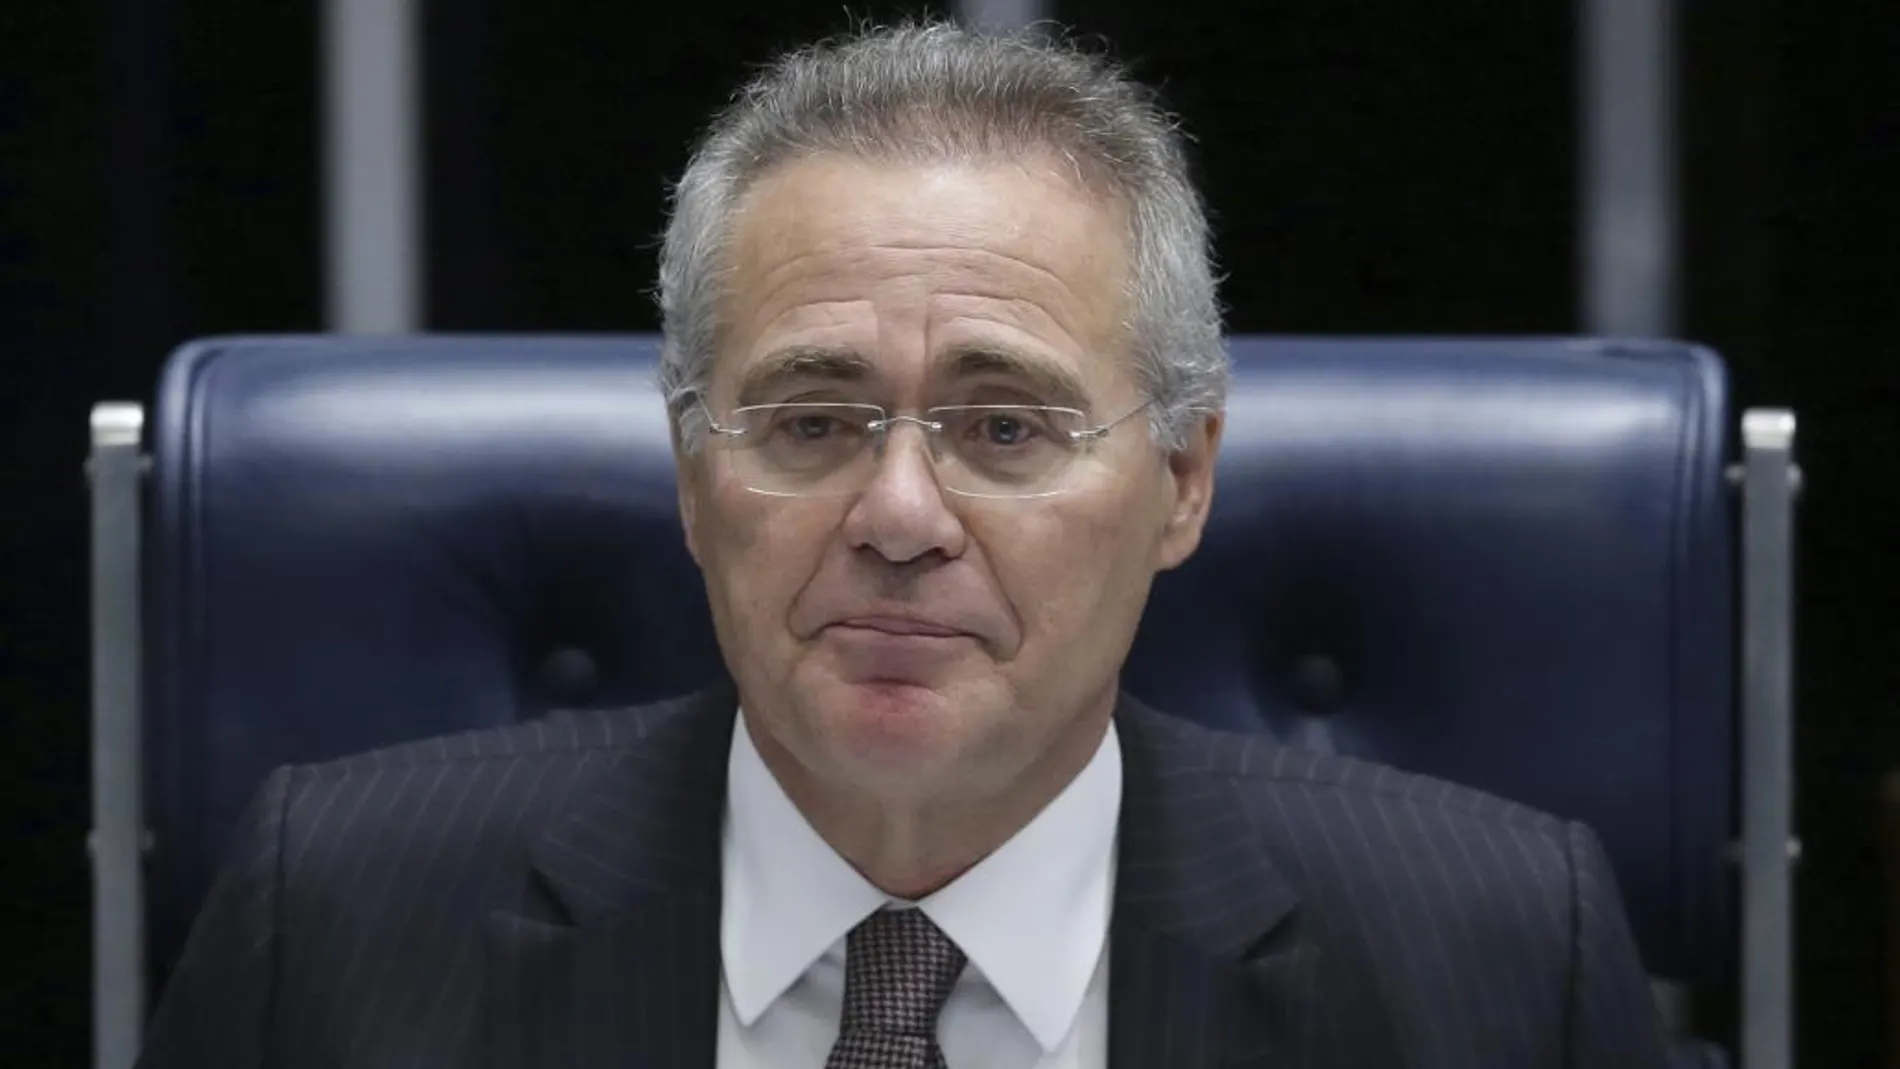 El presidente del Senado de Brasil, Renan Calheiros, durante una sesión el día 1 de diciembre de 2016